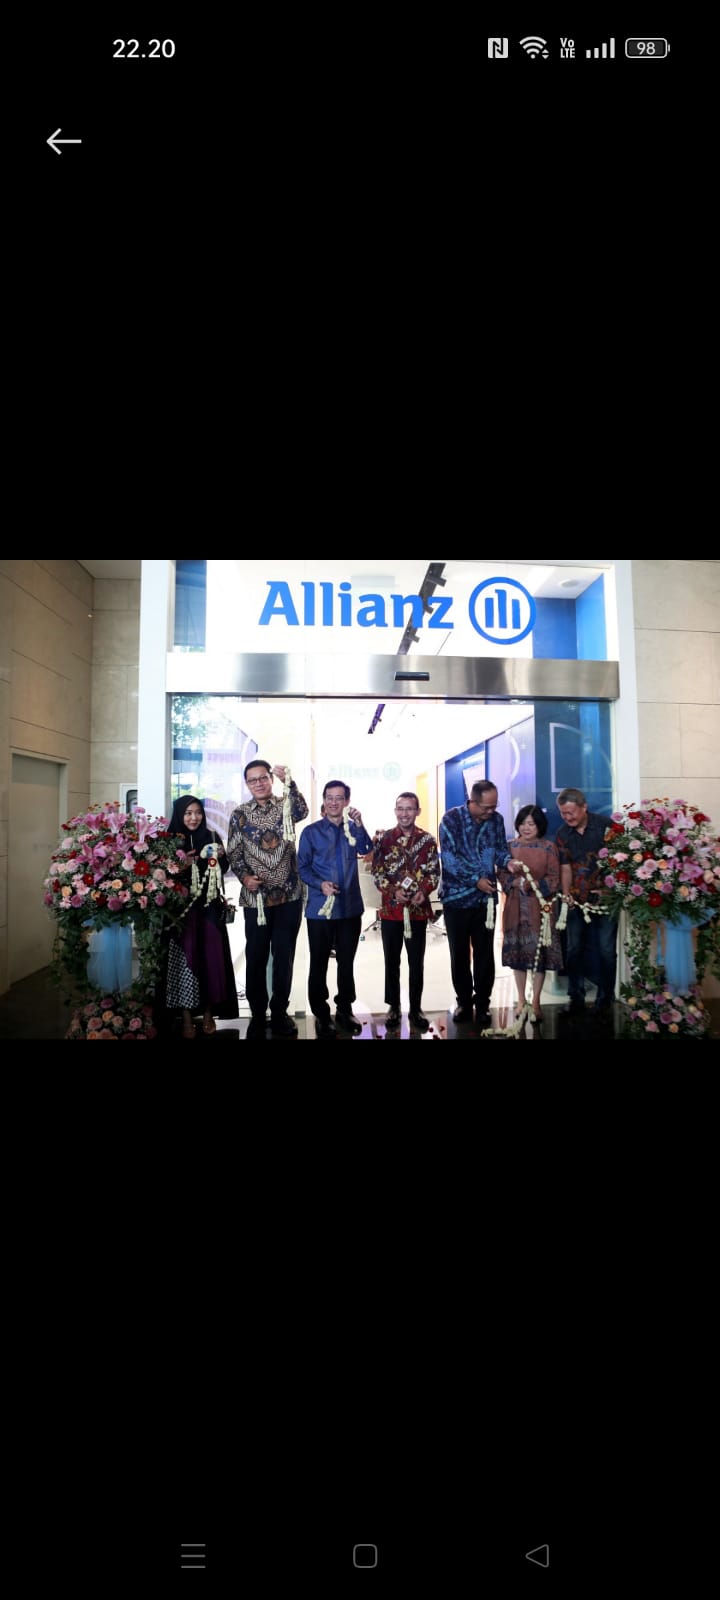 Resmikan Kantor Layanan Baru, Allianz Indonesia Hadir Lebih Dekat Untuk Arek Suroboyo